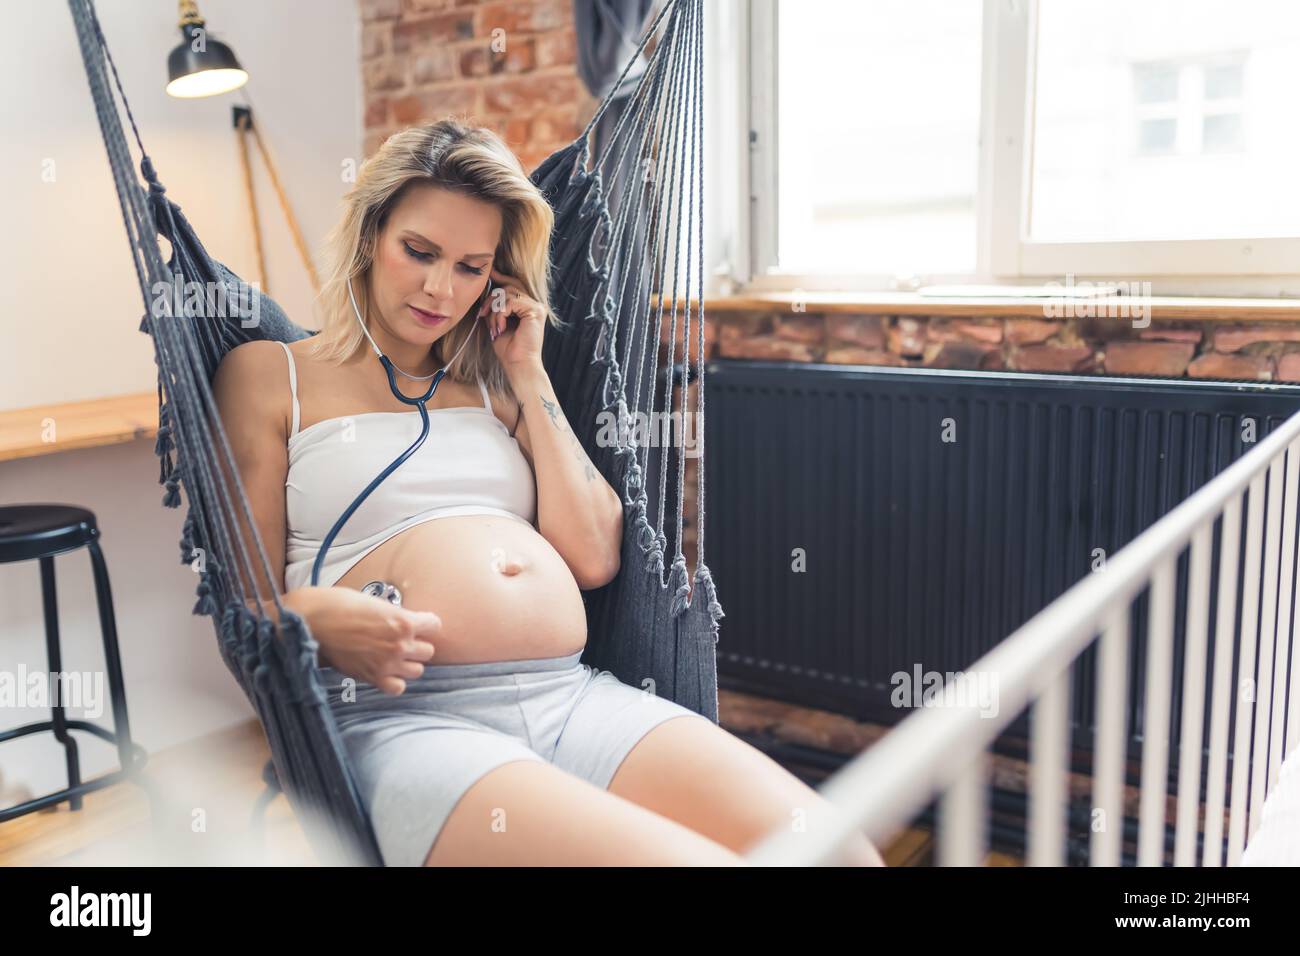 Donna caucasica incinta con capelli biondi colorati e grande ventre di gravidanza seduta su un'oscillazione interna e toccando il suo ventre con uno stetoscopio per sentire il battito del suo feto. Foto di alta qualità Foto Stock